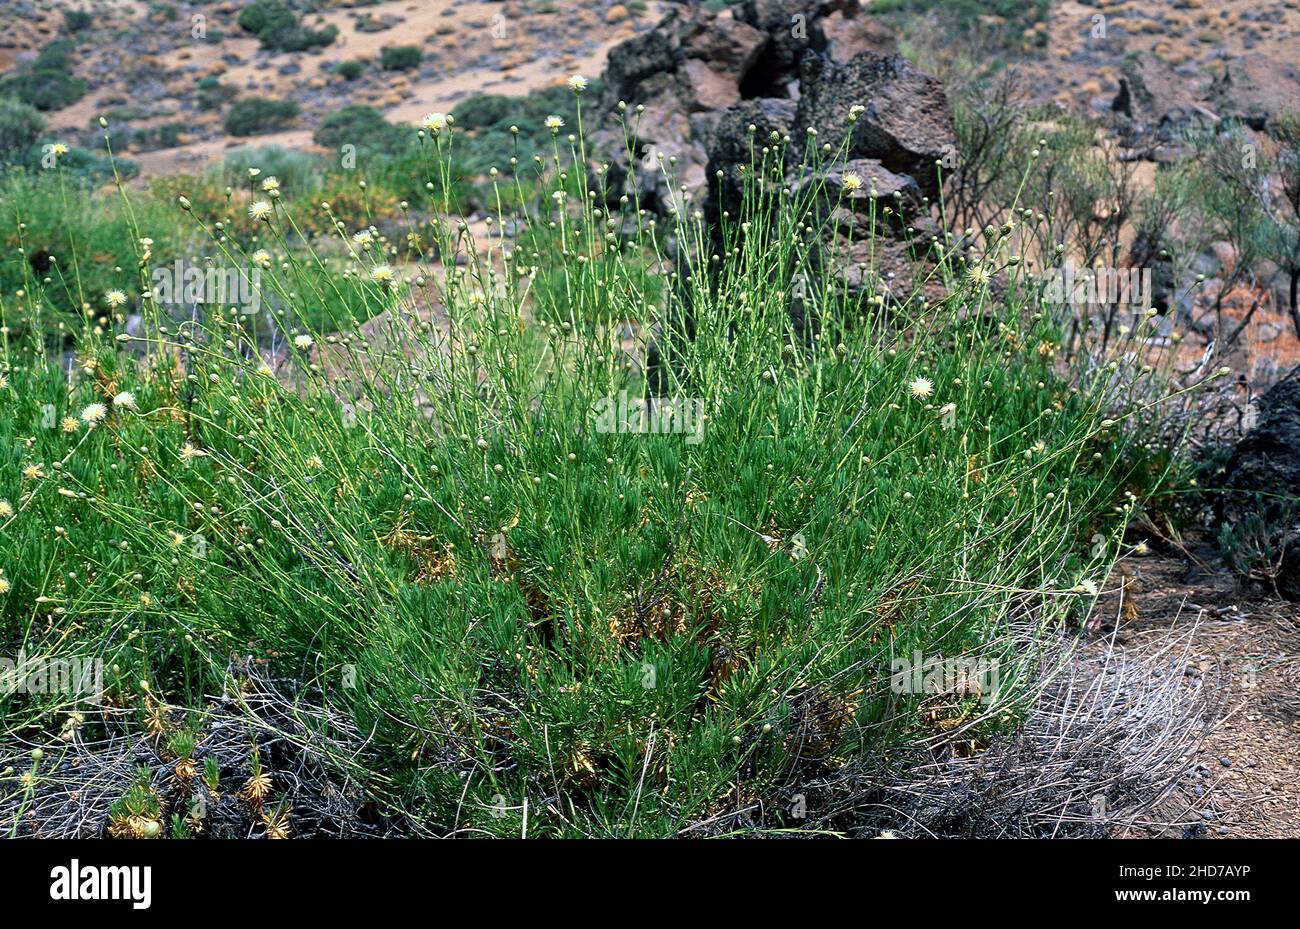 Cabezon de la cumbre (Cheirolophus teydis) es un arbusto endémico de las montañas de Tenerife y La Palma. Esta foto fue tomada en Las Canadas del Teide Foto de stock